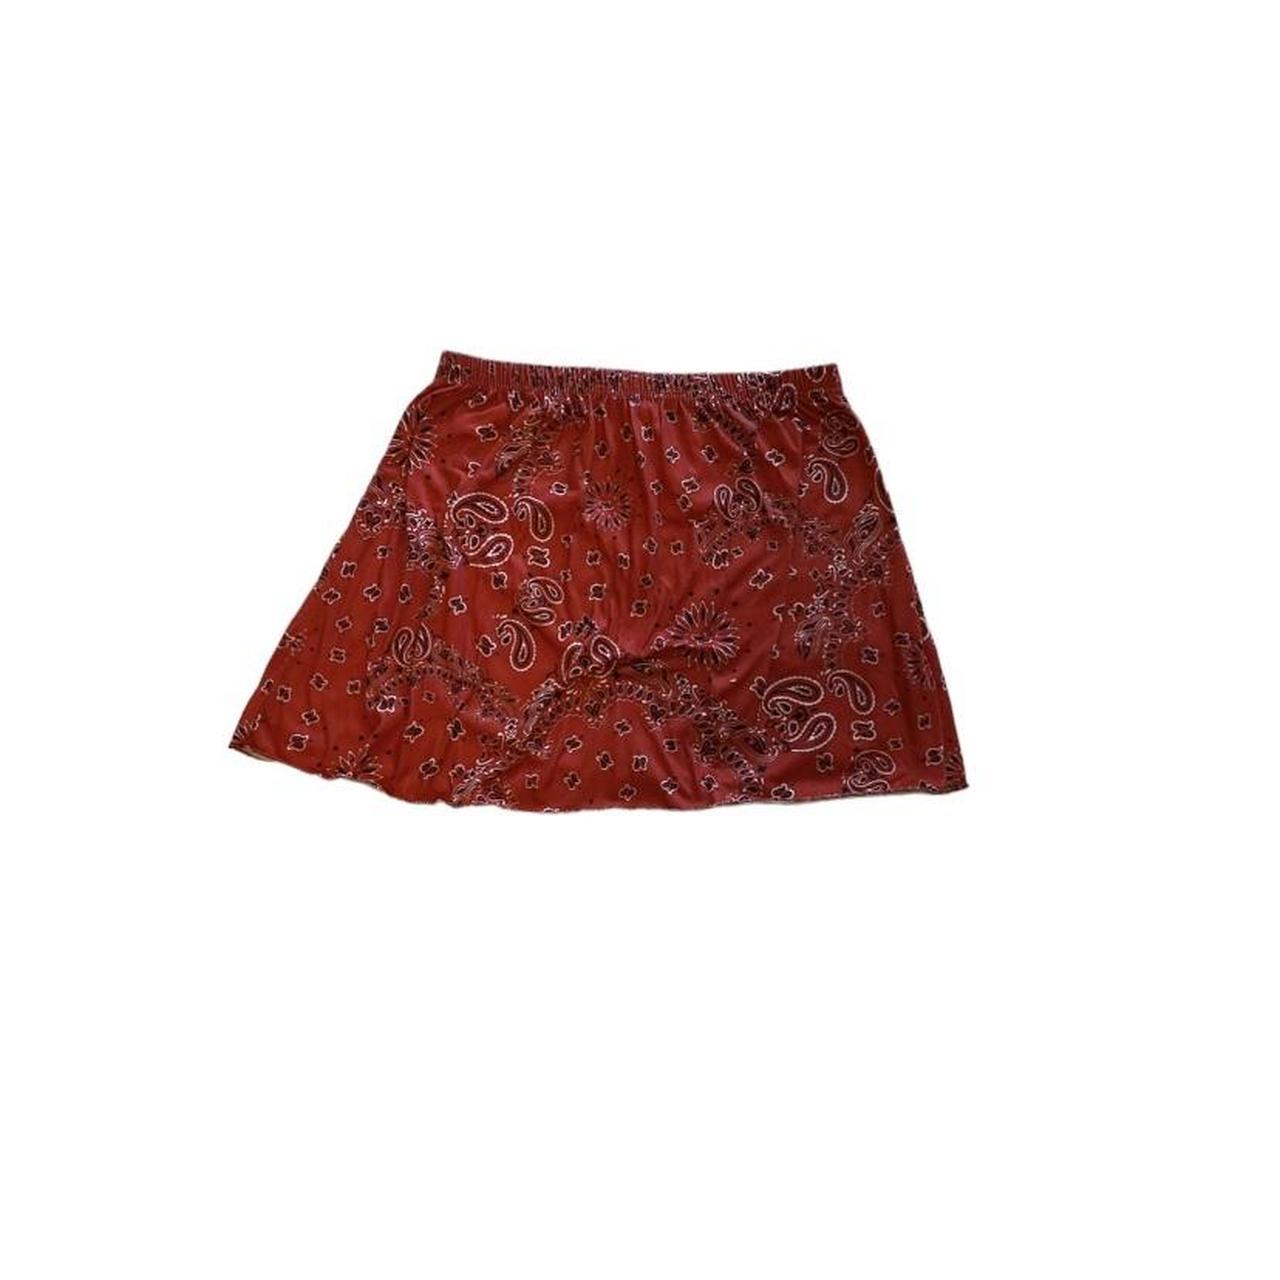 Product Image 1 - Bandana print skirt! ❤️ no